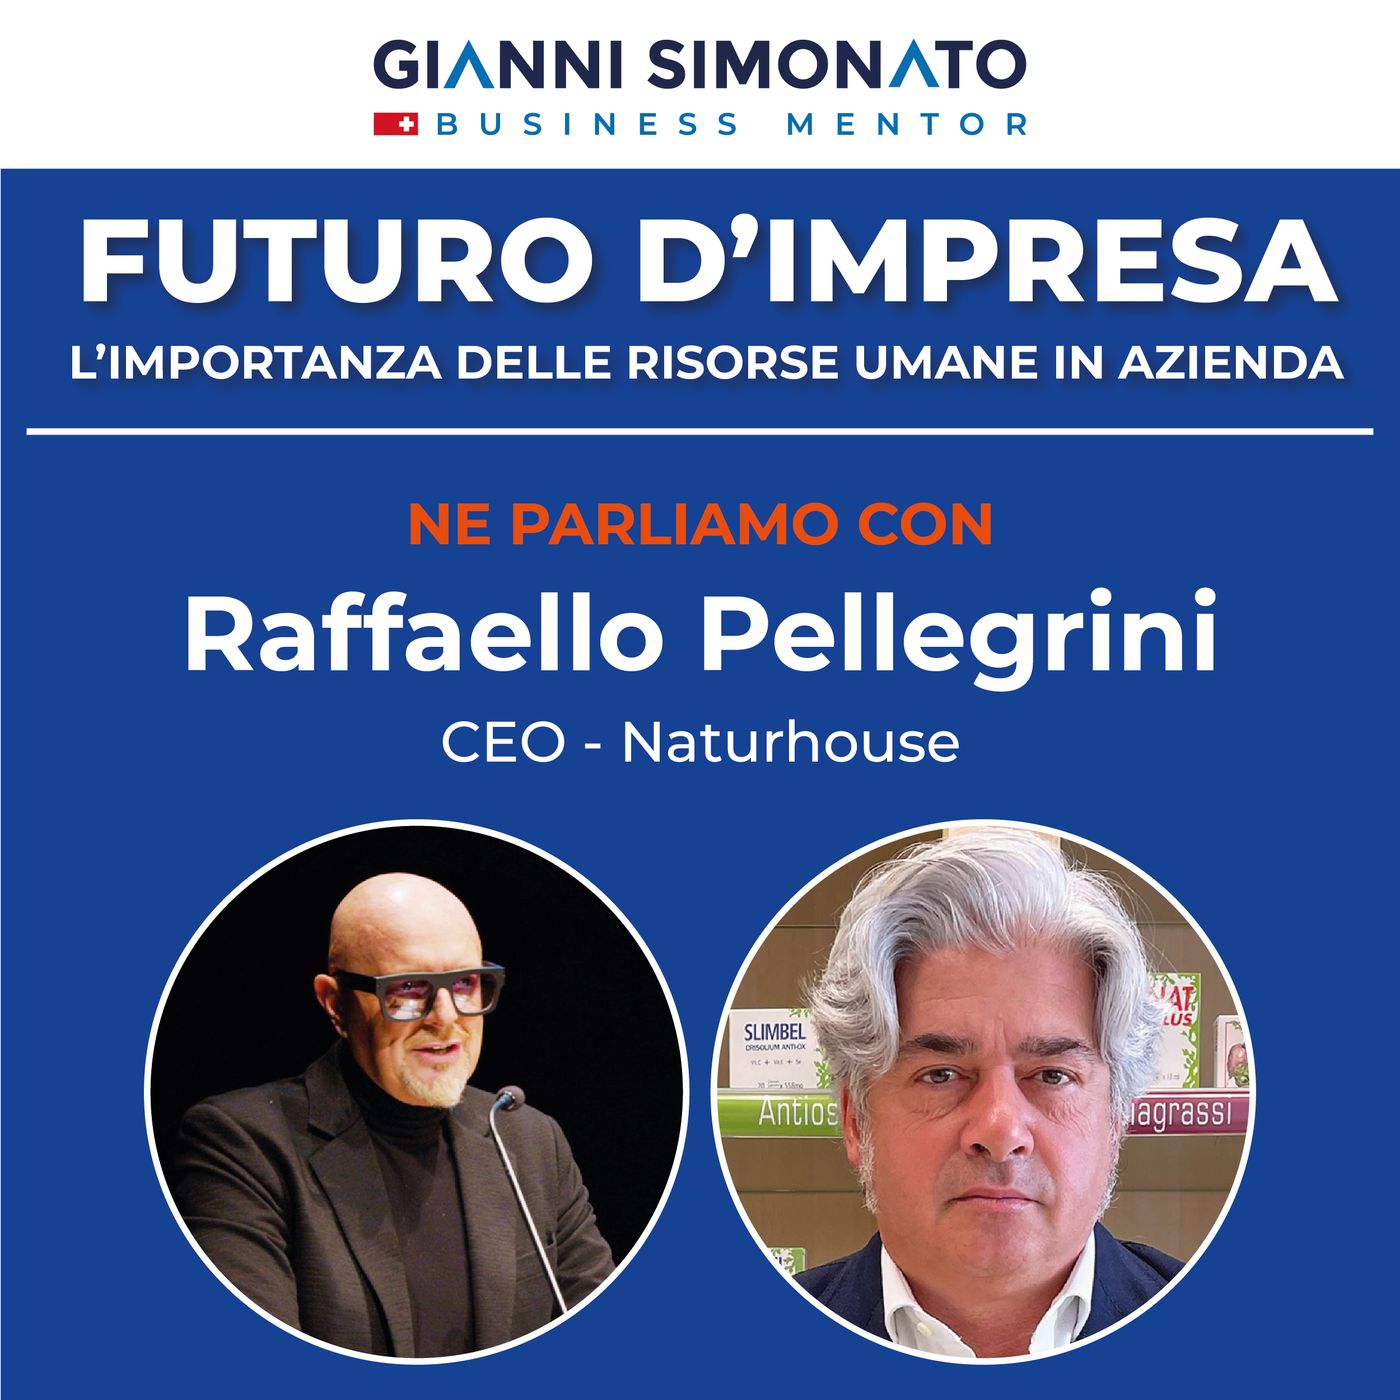 Futuro d'Impresa ne parliamo con: Raffaello Pellegrini CEO - Naturhouse e Gianni Simonato CEO Mentor